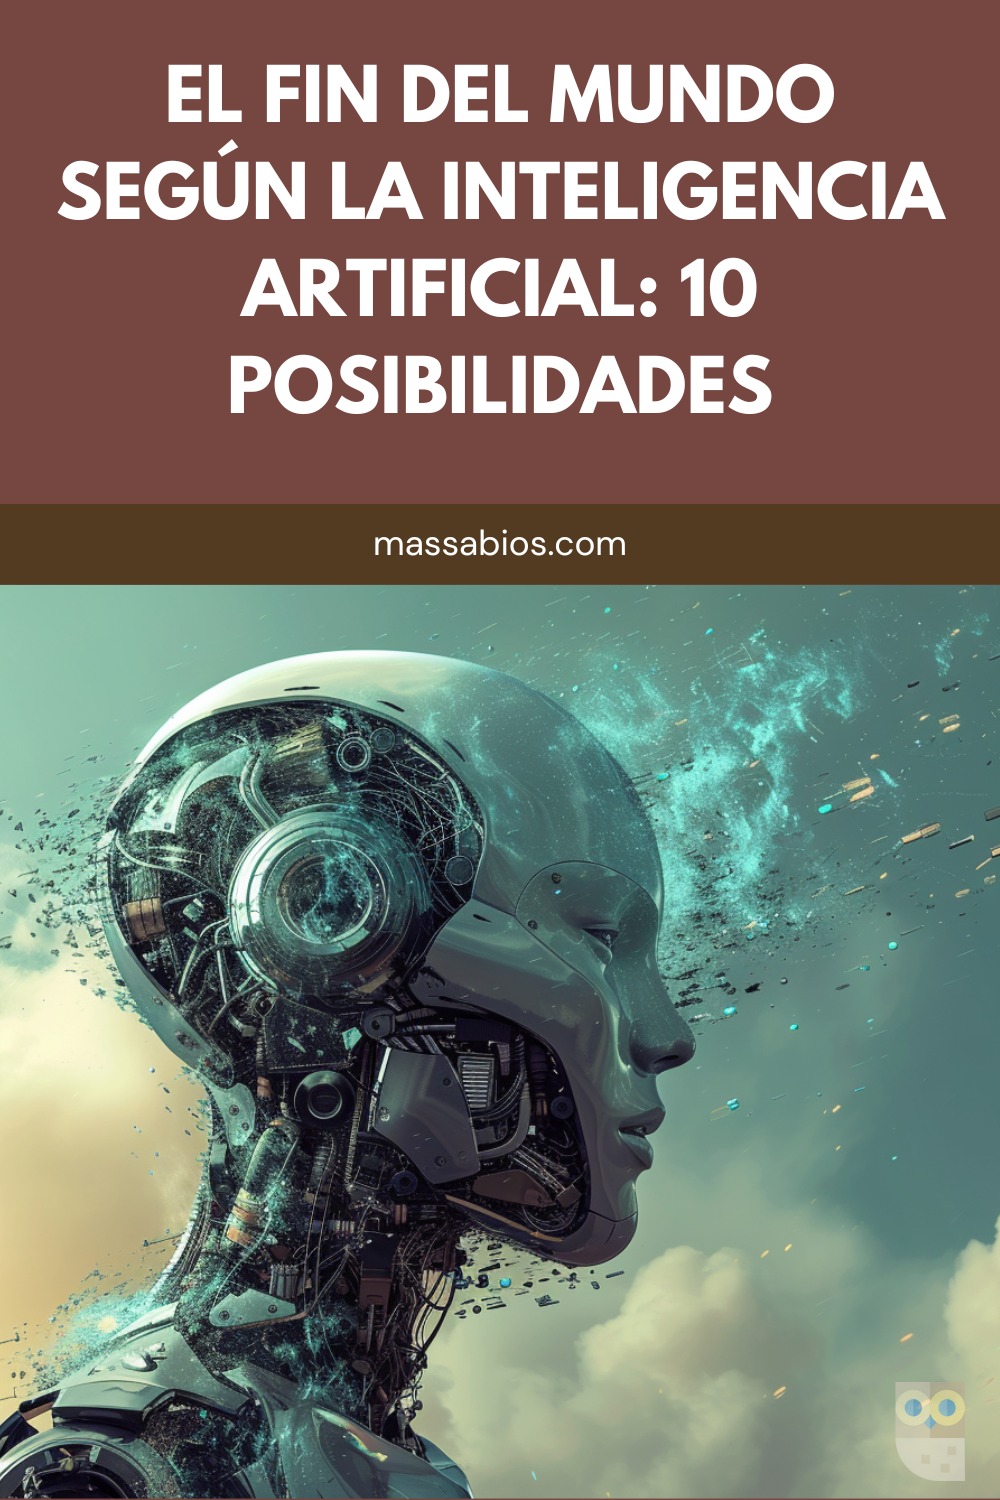 El fin del mundo según la Inteligencia Artificial: 10 posibilidades